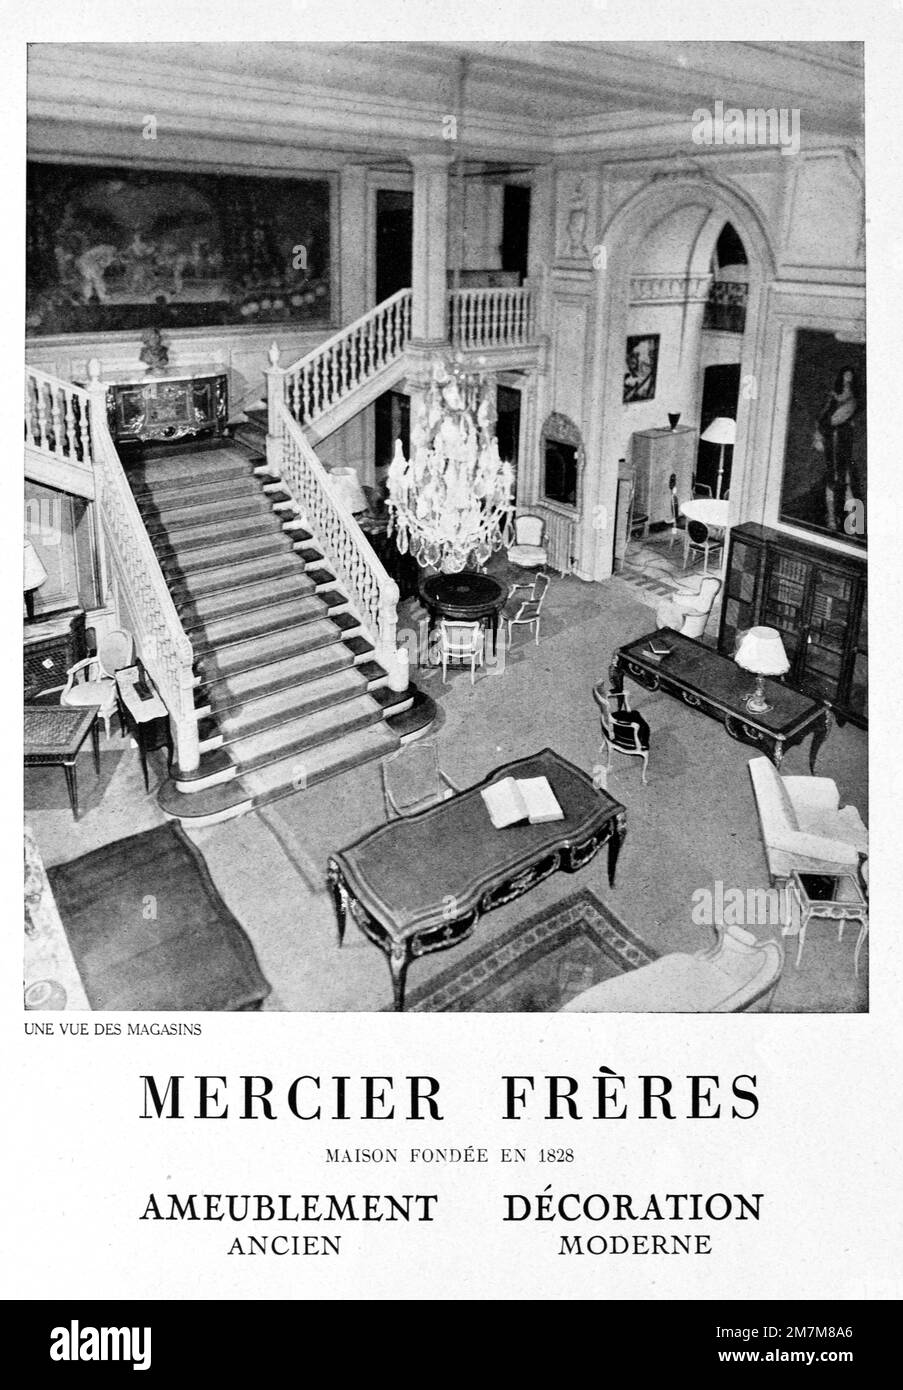 Publicité, publicité, publicité ou illustration vintage ou ancienne pour l'intérieur de 1950s mobilier magasin ou magasin de meubles Mercier Frères Paris France 1956 Banque D'Images